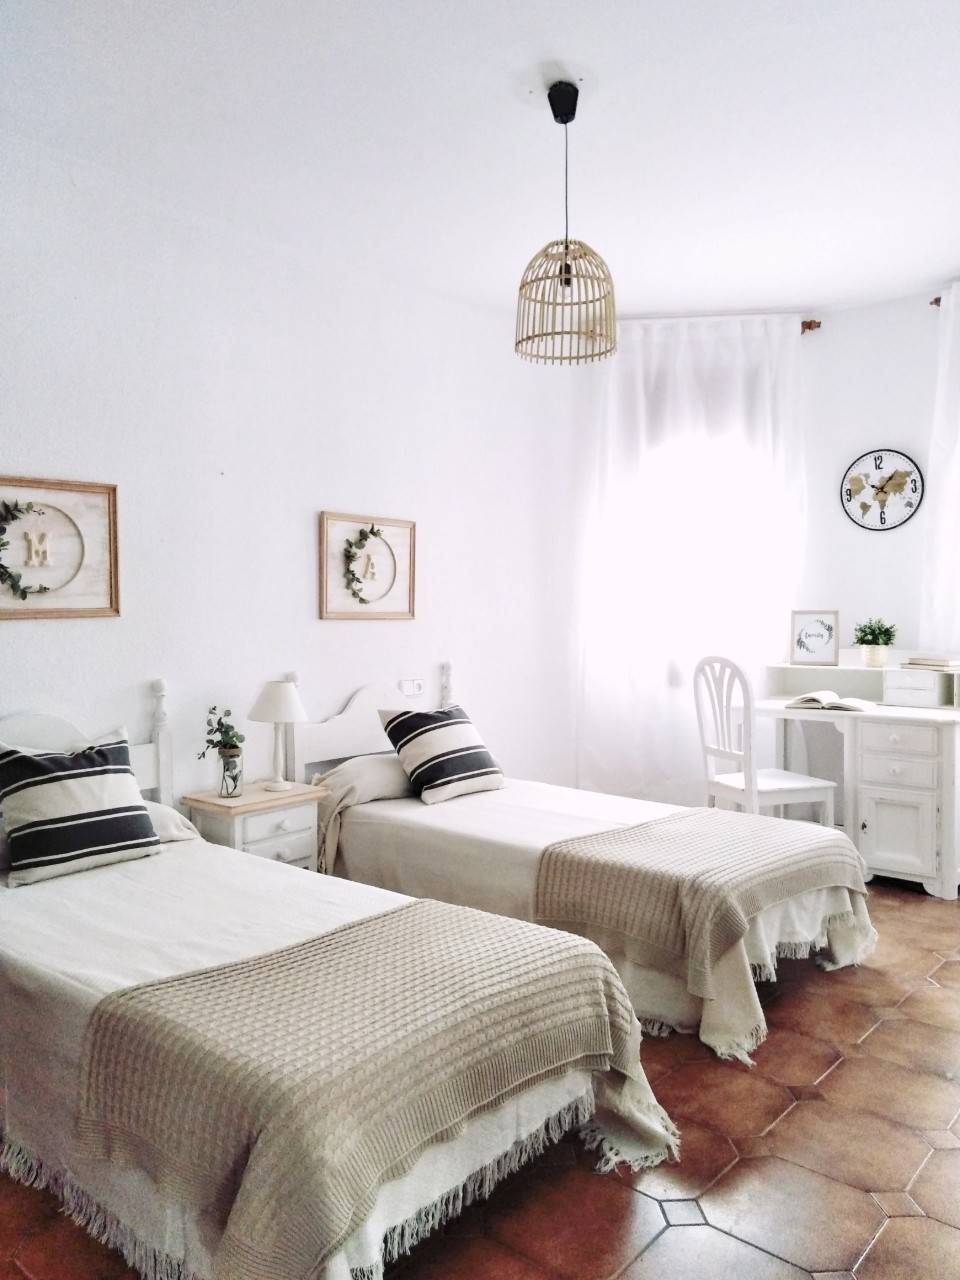 Dormitorio de aires campestres pintados a la tiza en color blanco 20190402 113446-01